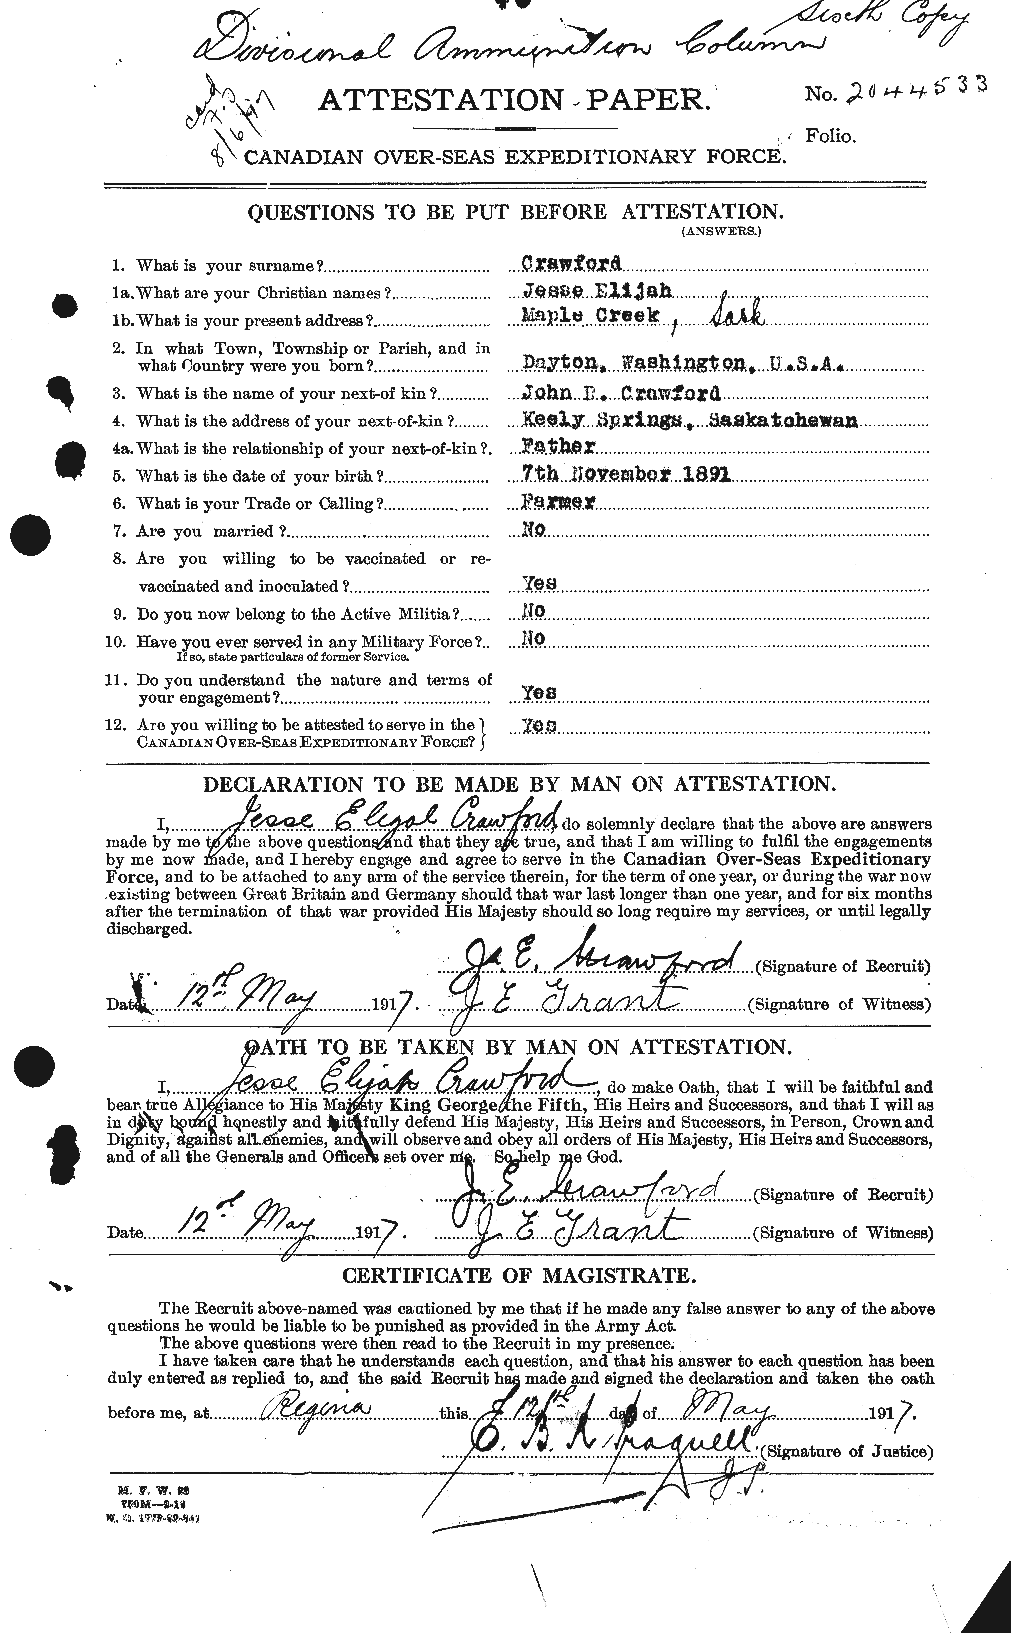 Dossiers du Personnel de la Première Guerre mondiale - CEC 062461a